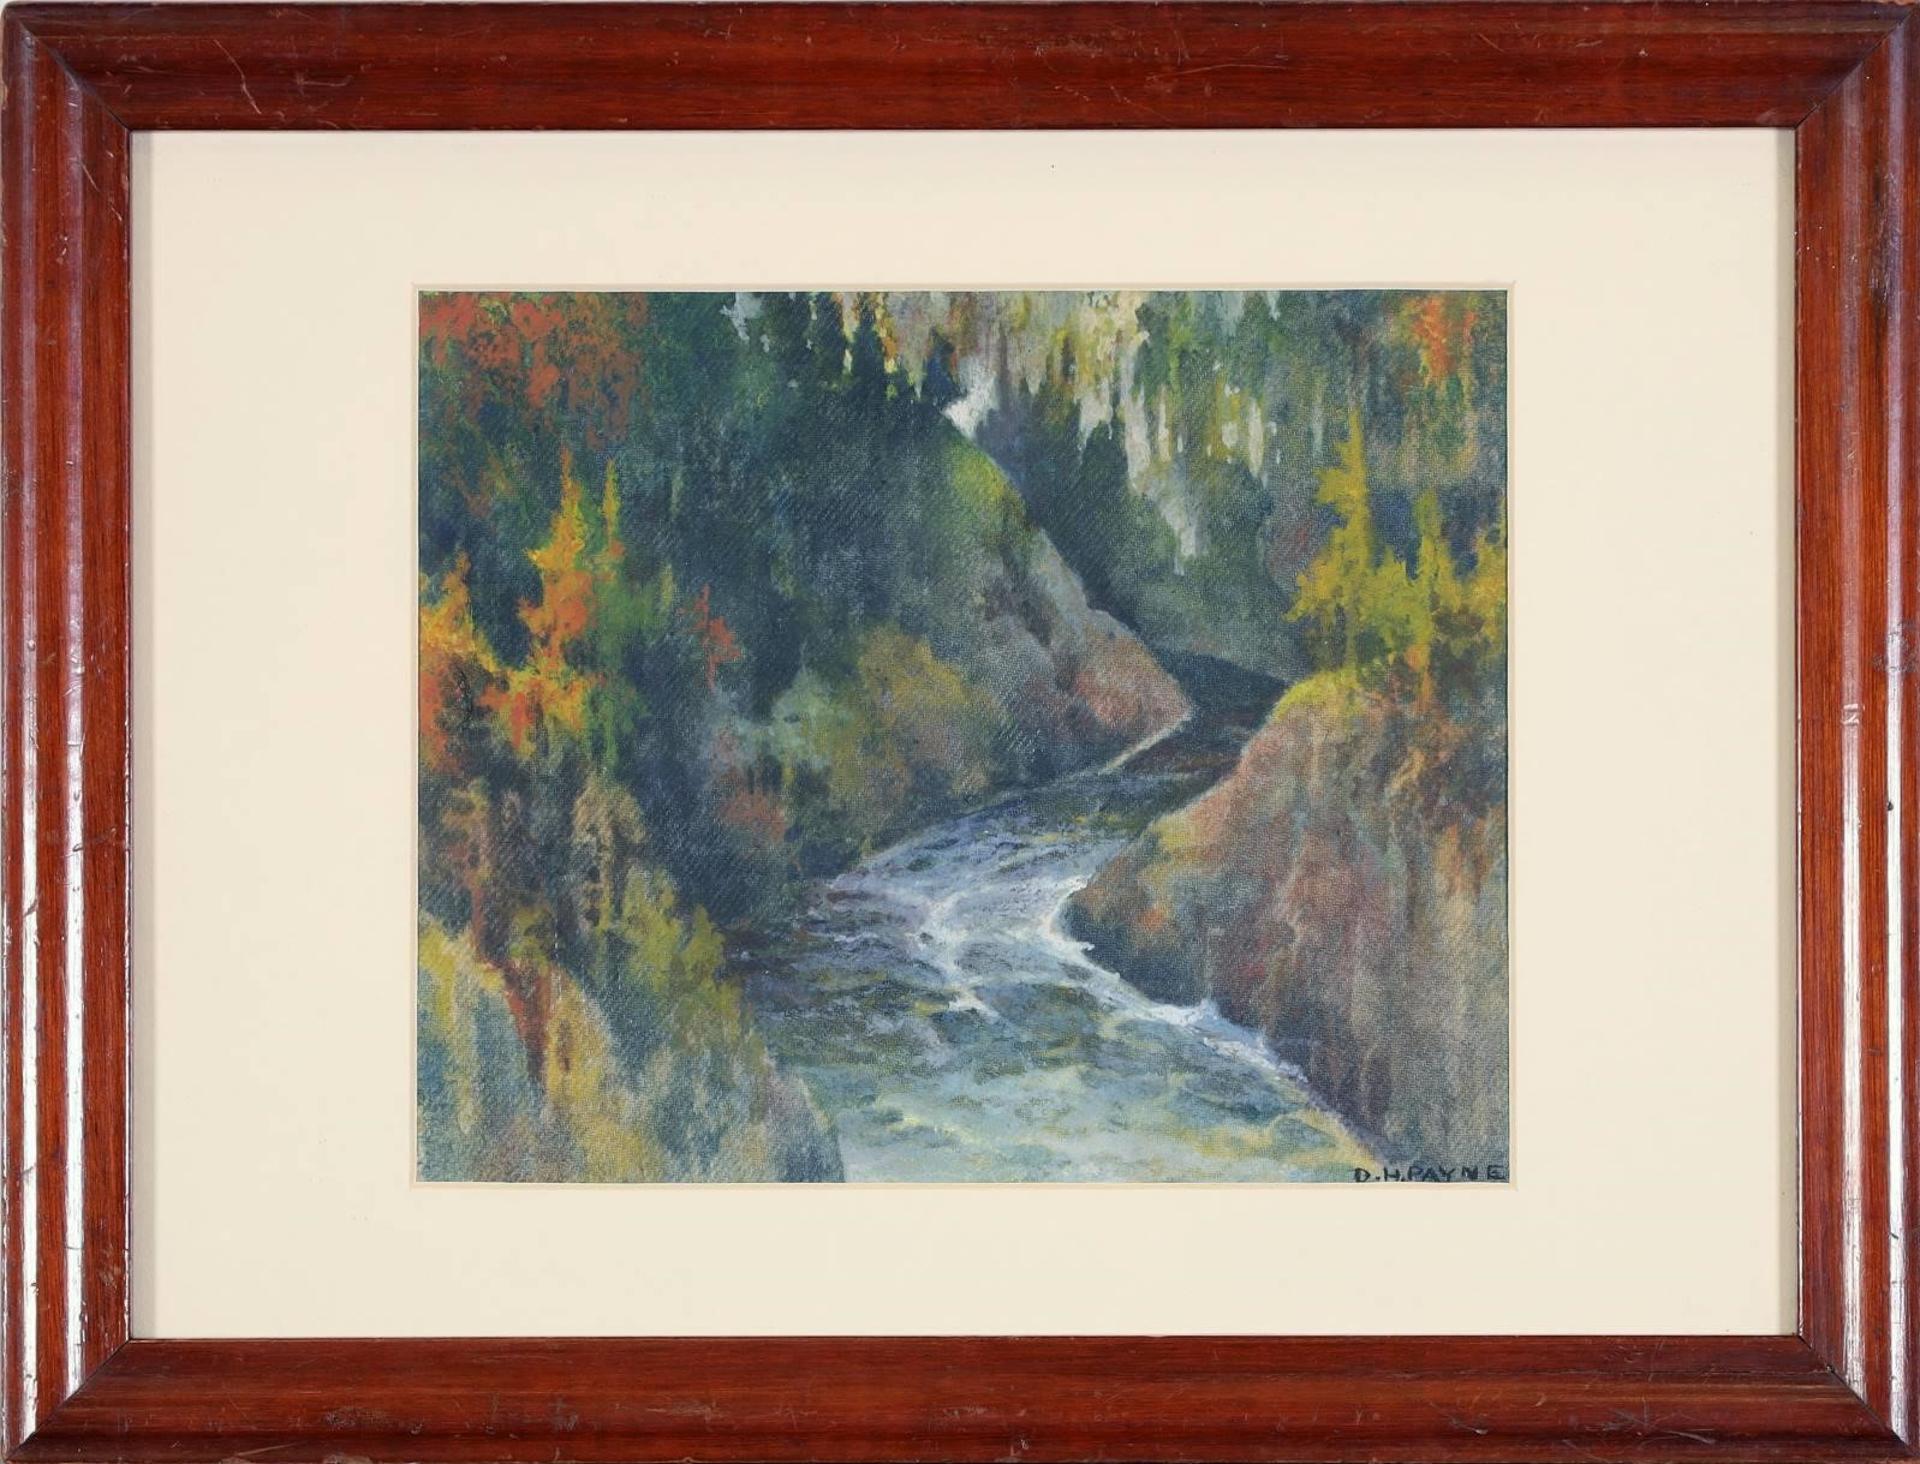 David Harold Payne (1890-1950) - Untitled, River Canyon